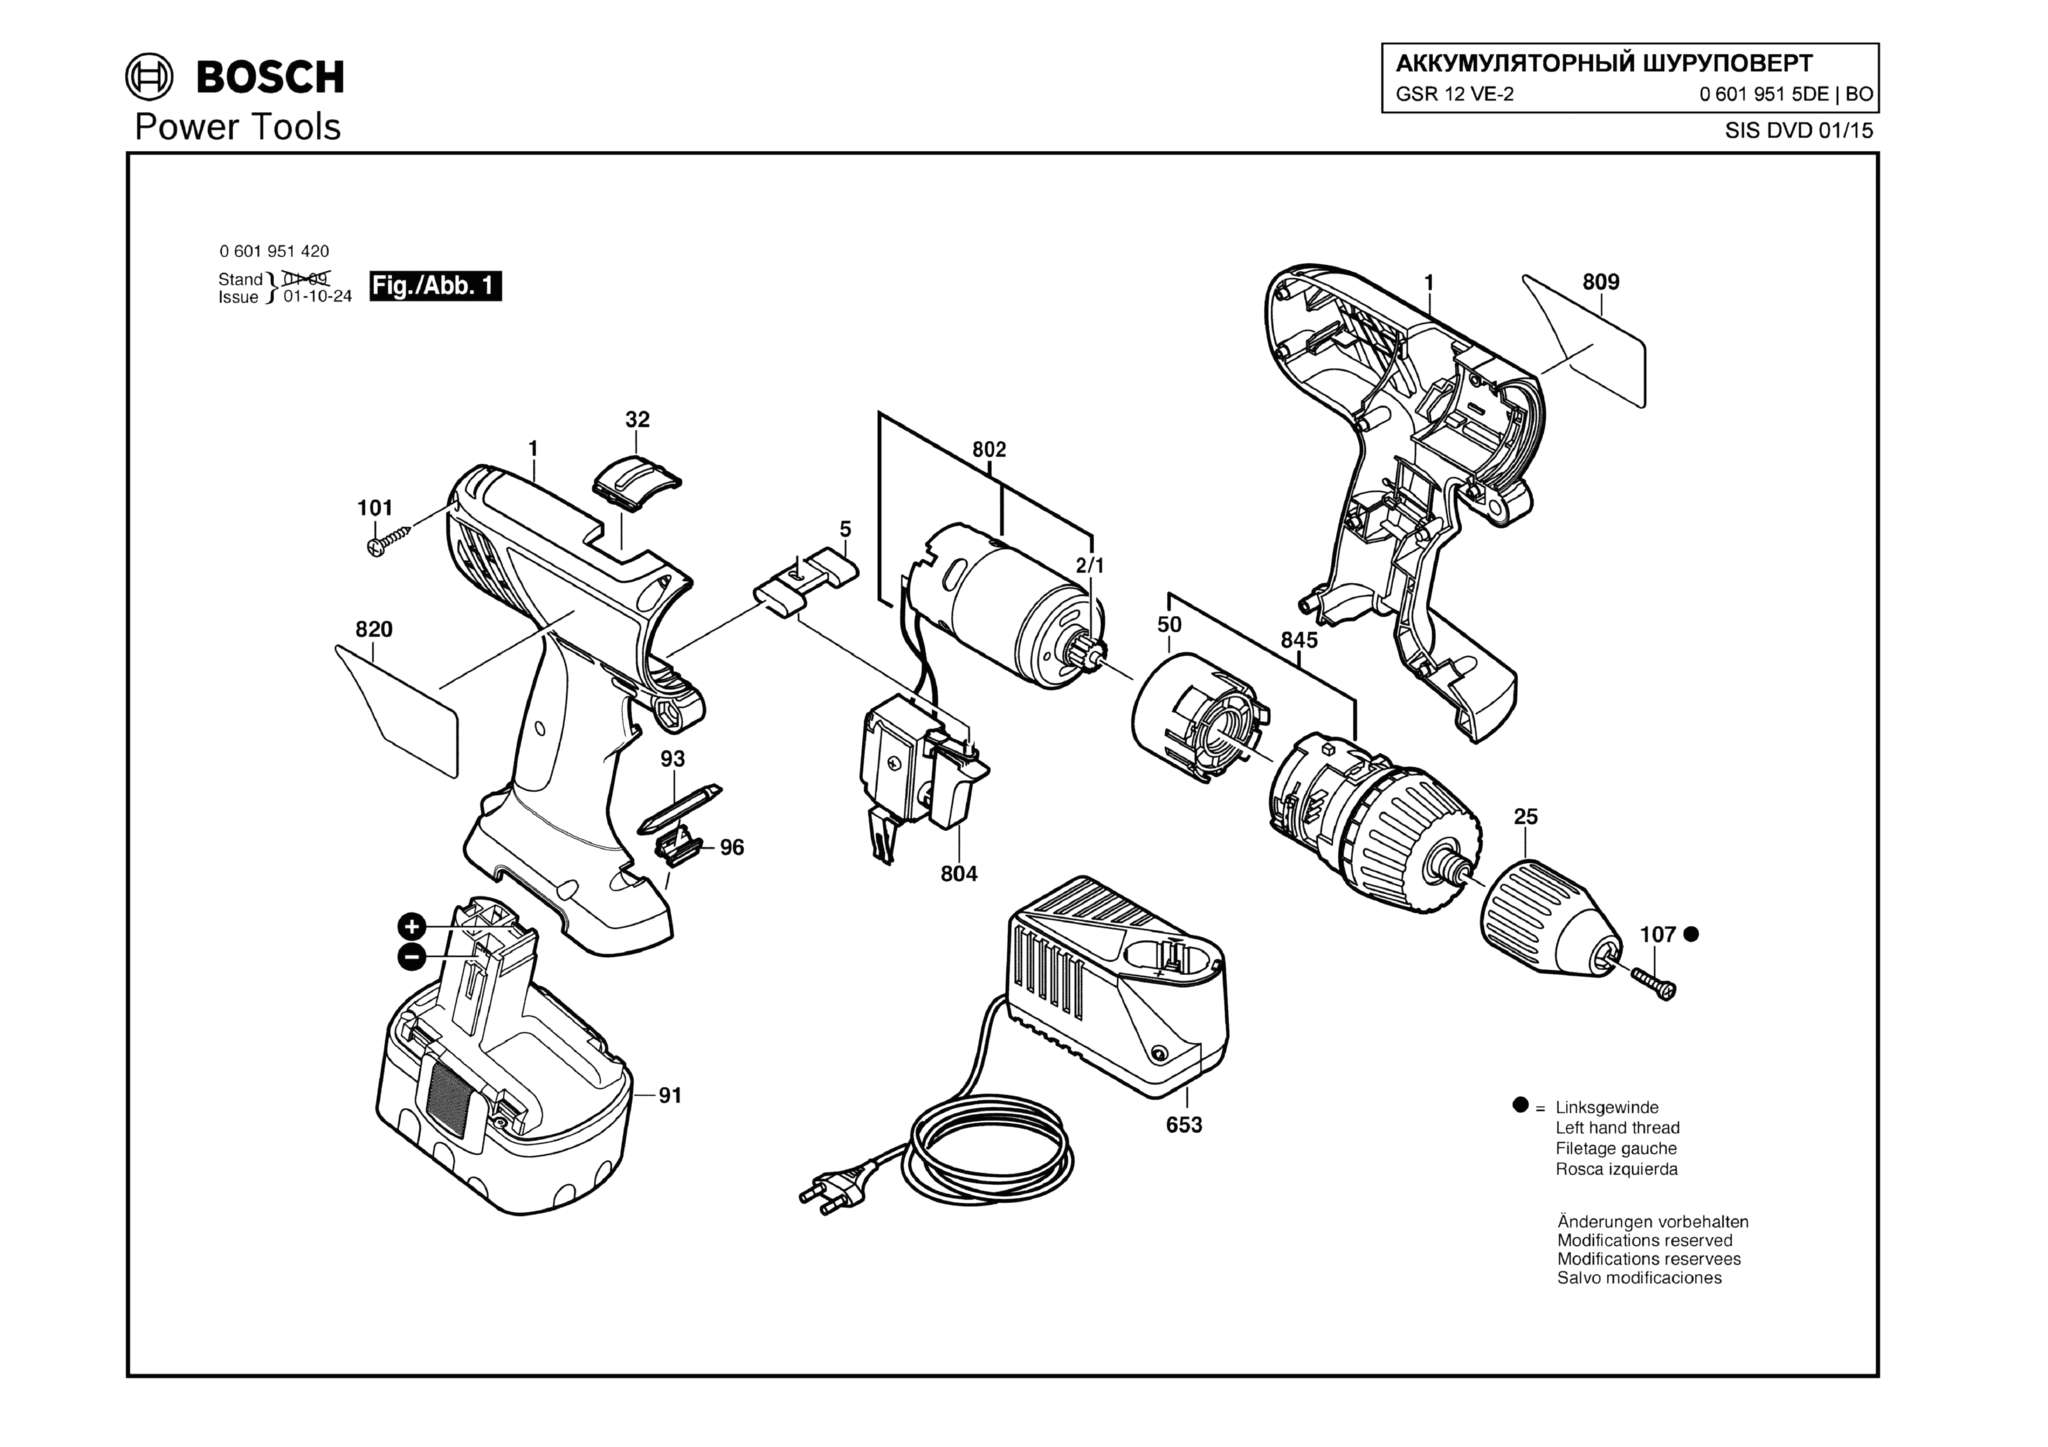 Запчасти, схема и деталировка Bosch GSR 12 VE-2 (ТИП 06019515DE)